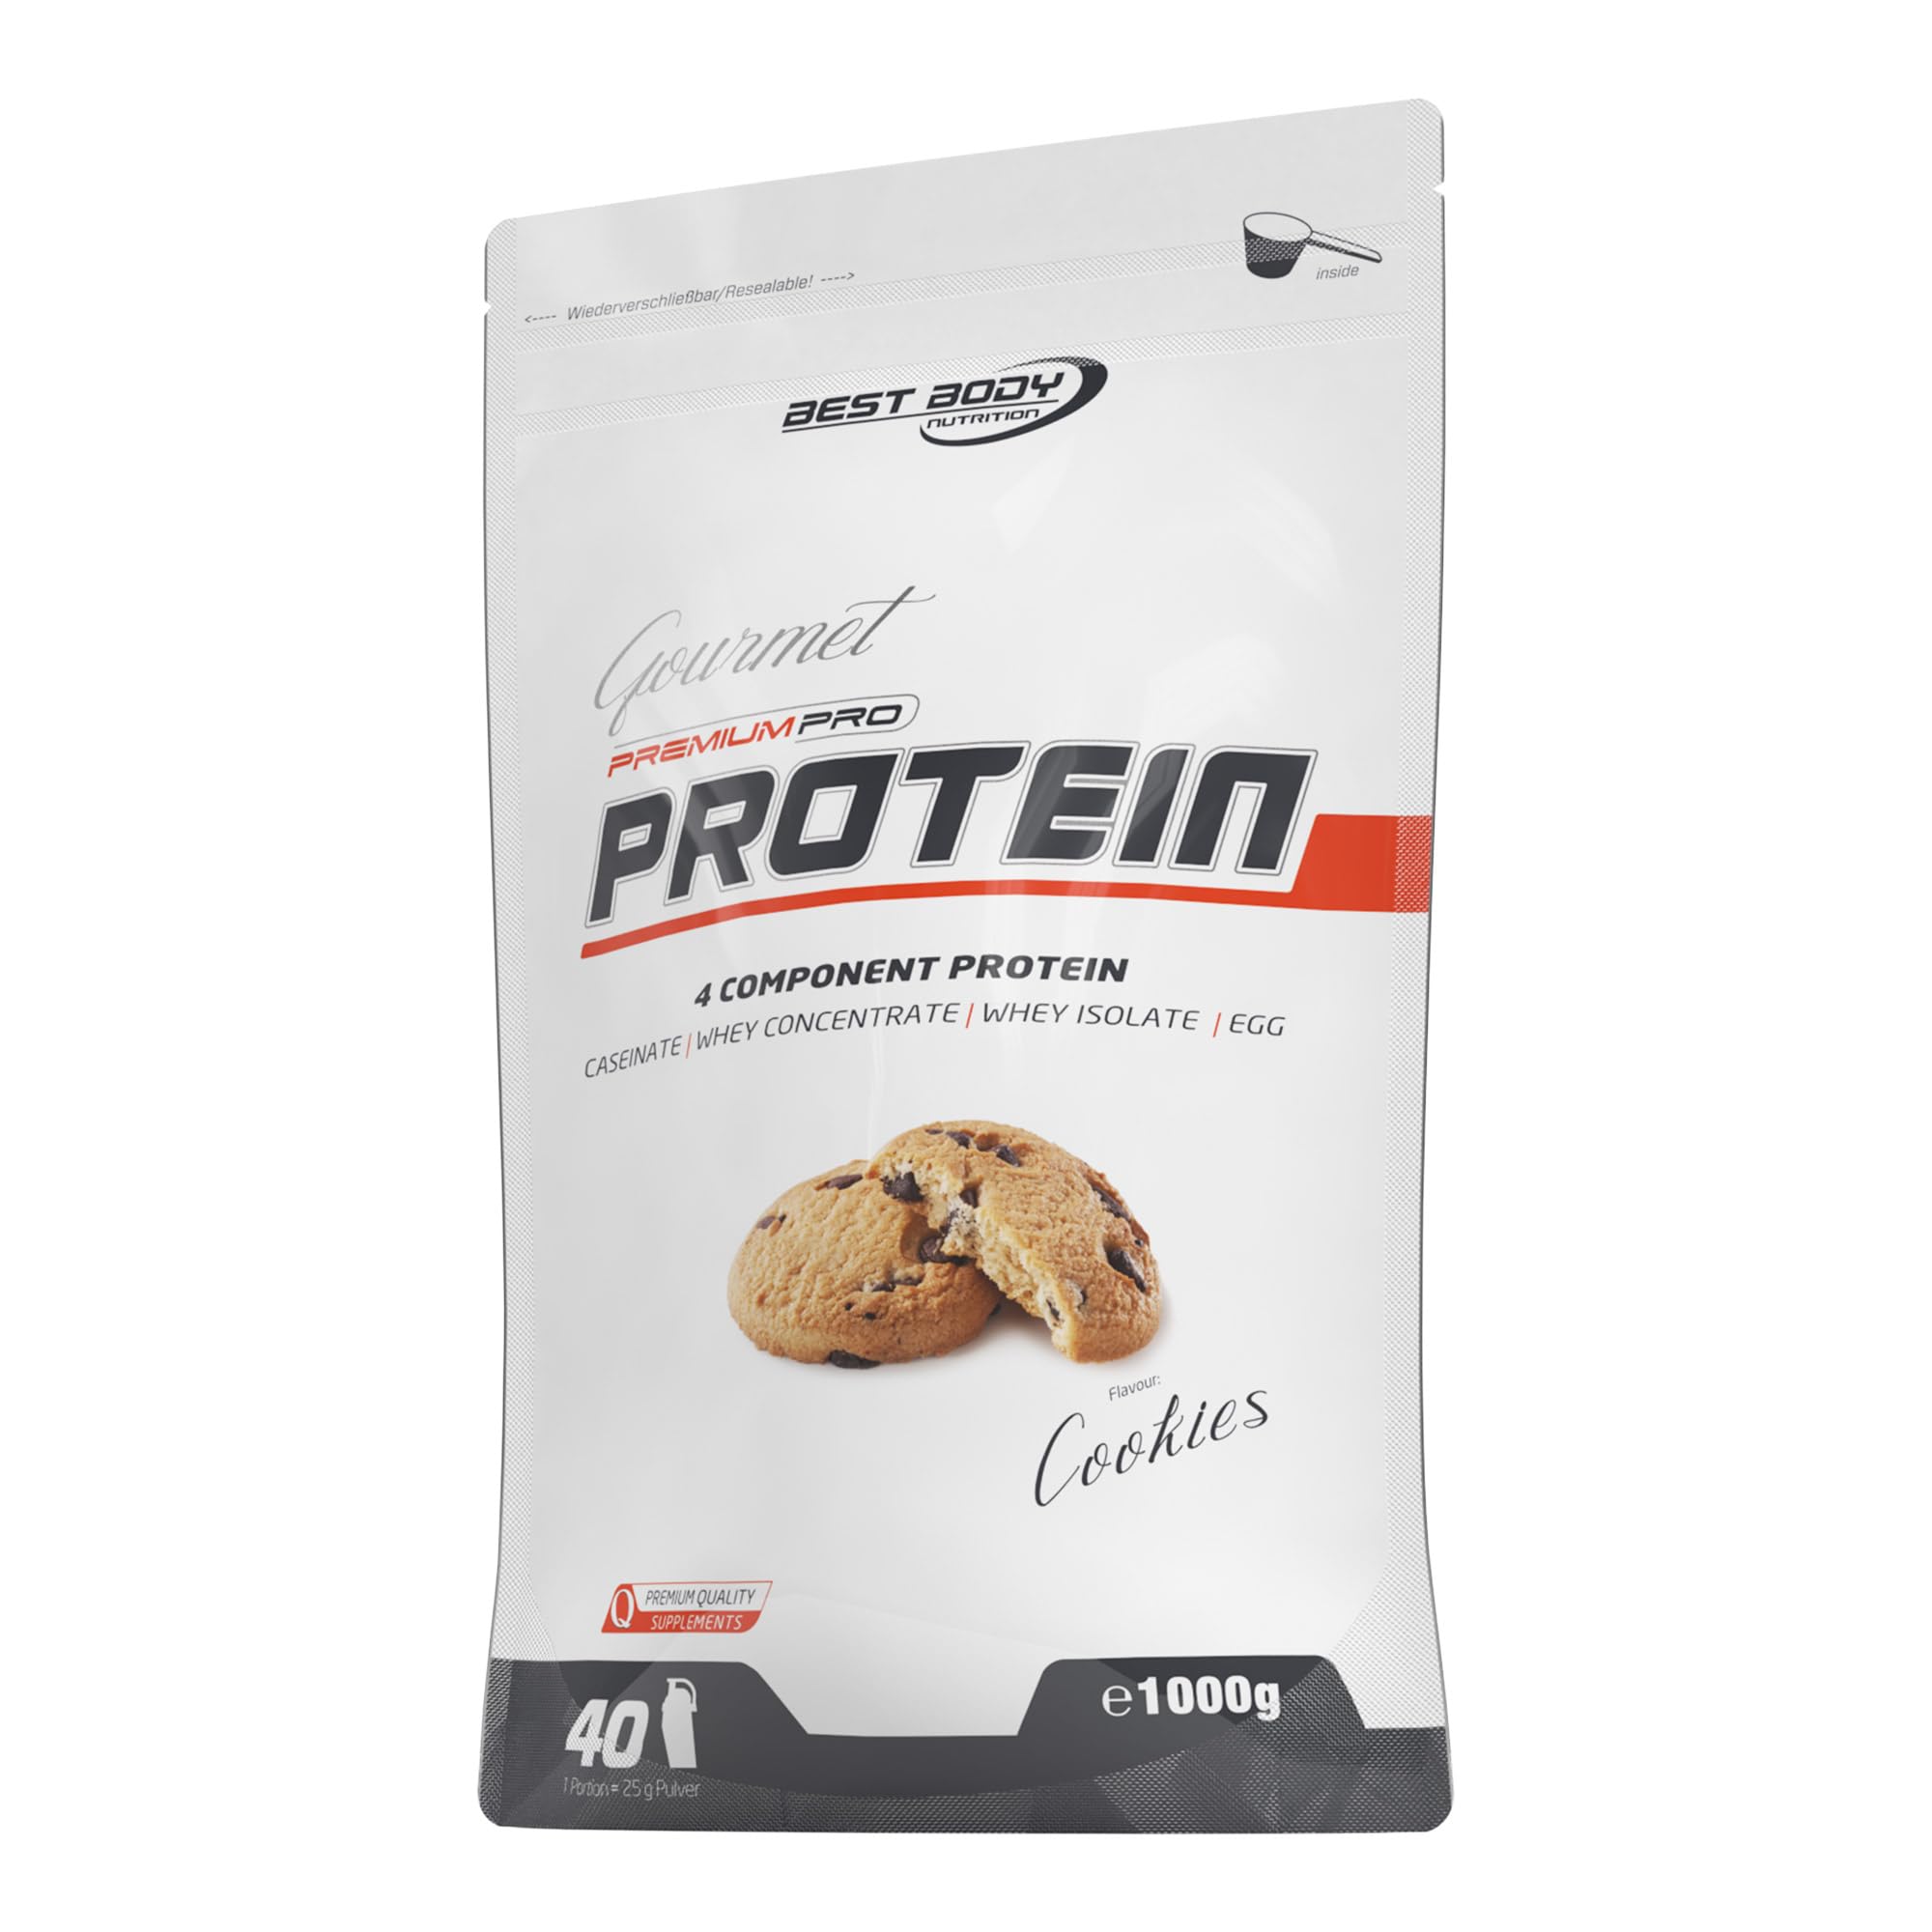 Best Body Nutrition Gourmet Premium Pro Protein, Cookies, 4 Komponenten Protein Shake: Caseinat, Whey Konzentrat, Whey Isolat, Eiprotein, 1 kg (1er Pack) Zipp Beutel